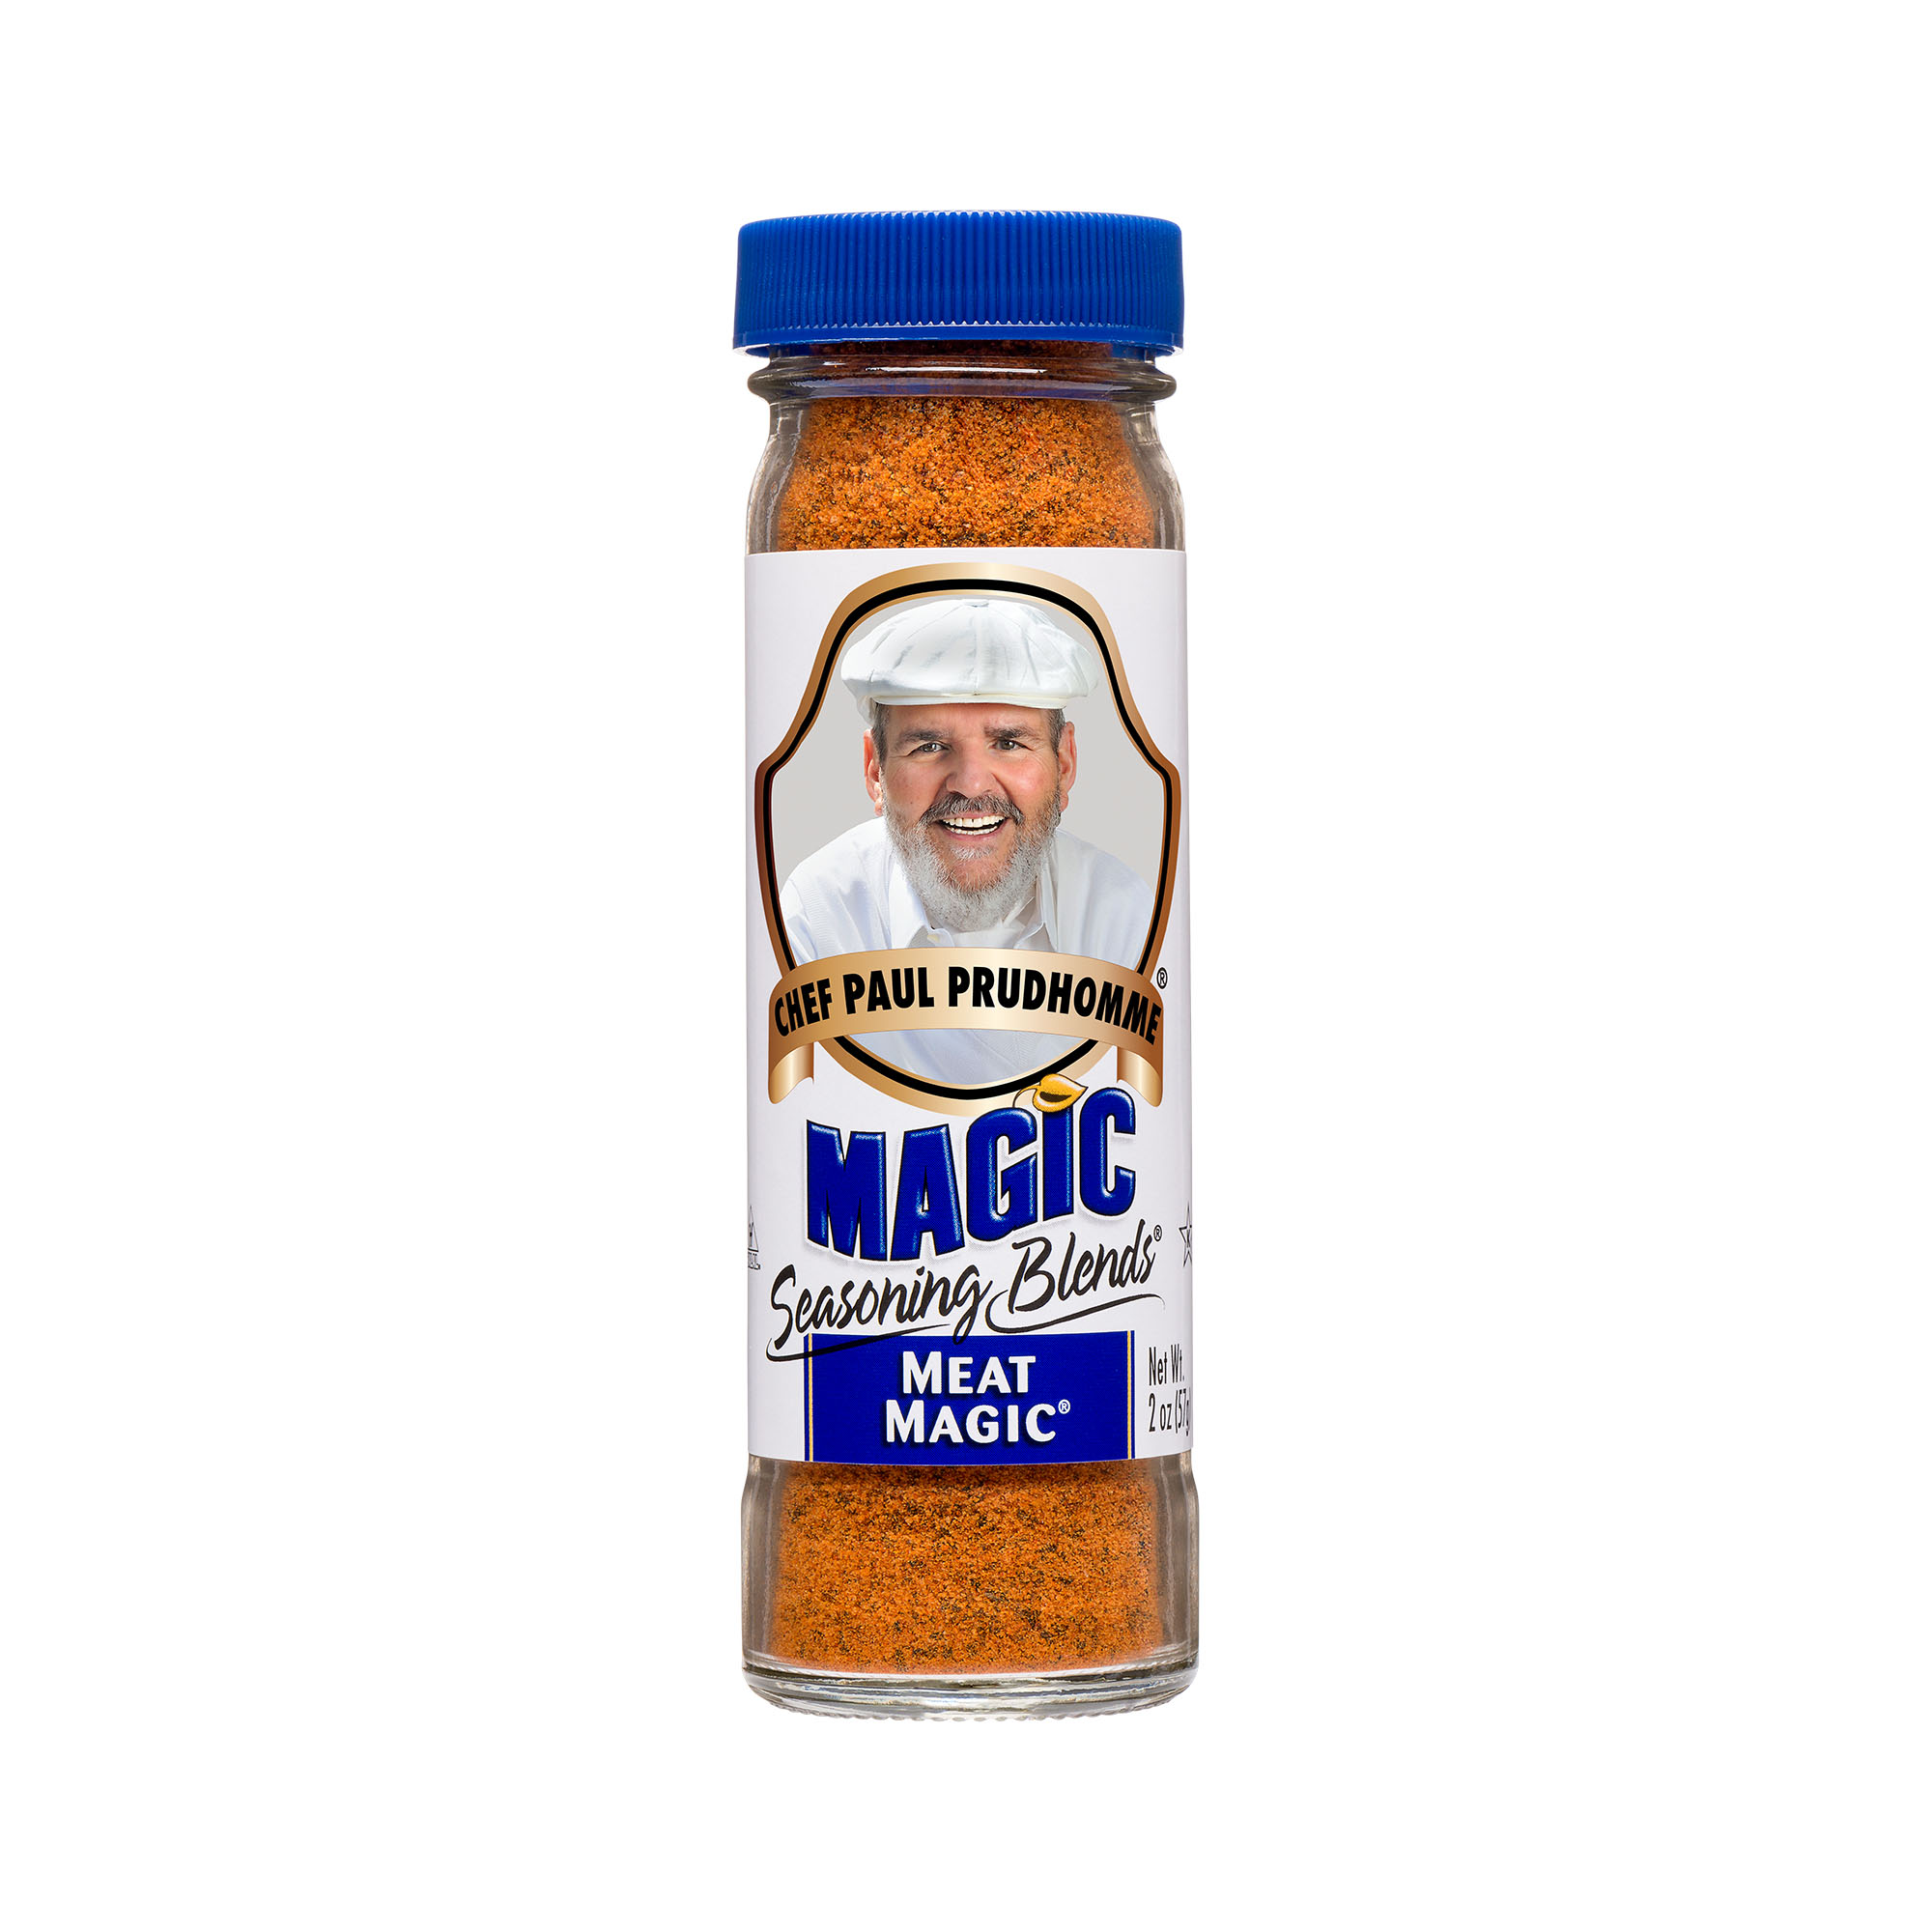 Just Add Magic Spice Box -   Just add magic, Spice box, Magic recipe